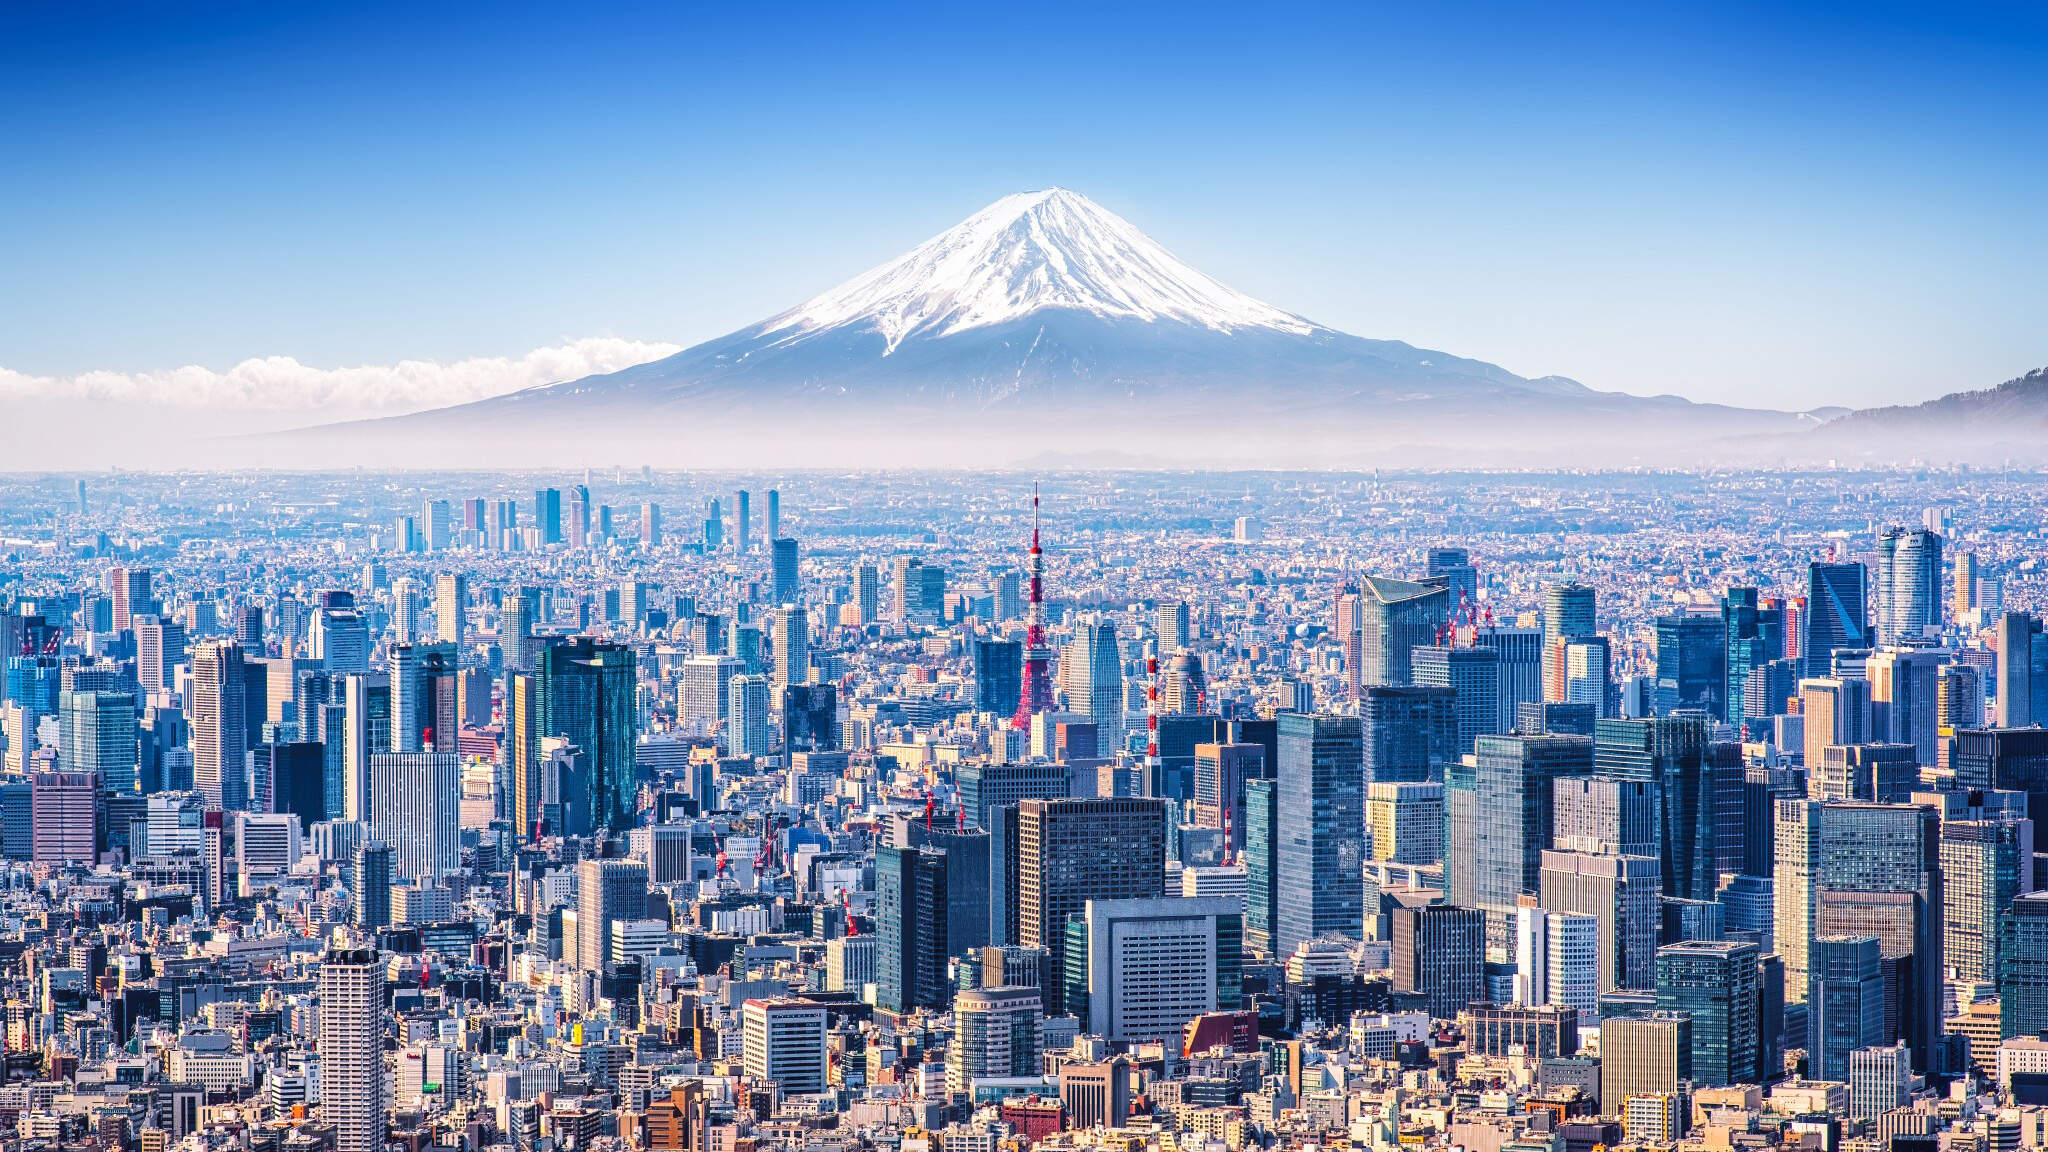 Tokio, ekonomiczna metropolia u podnóża góry Fuji.